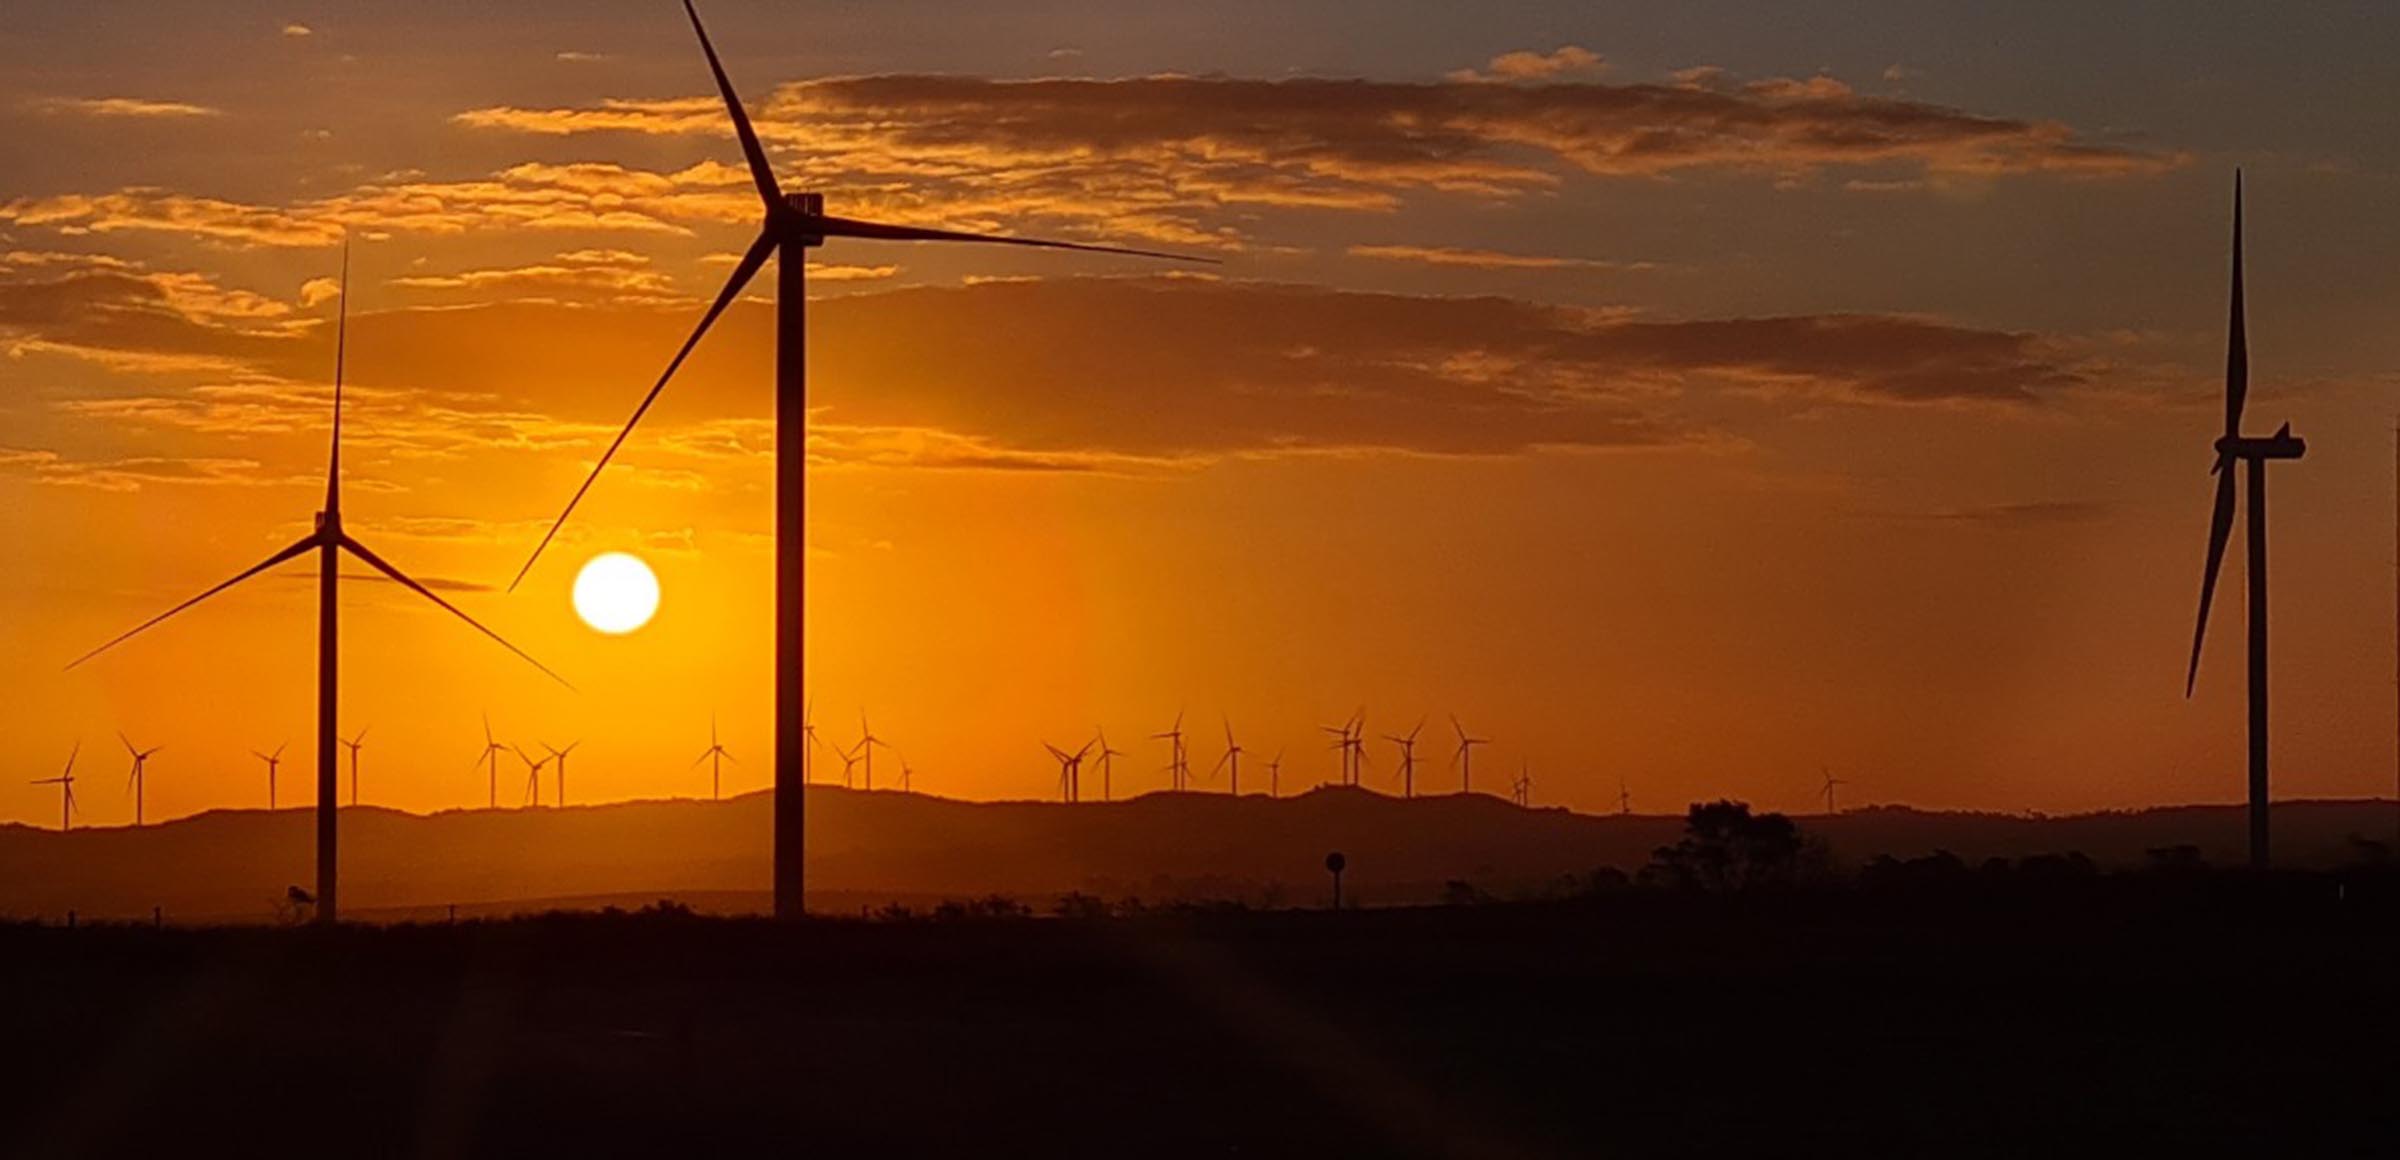 Transição energética e cooperação internacional: o que o Brasil pode aprender com a África do Sul. Na imagem: Turbinas eólicas da Enel Green Power no continente africano, com pôr-do-sol so fundo e céu em tom alaranjado (Foto: Divulgação RES4Africa/Enel)